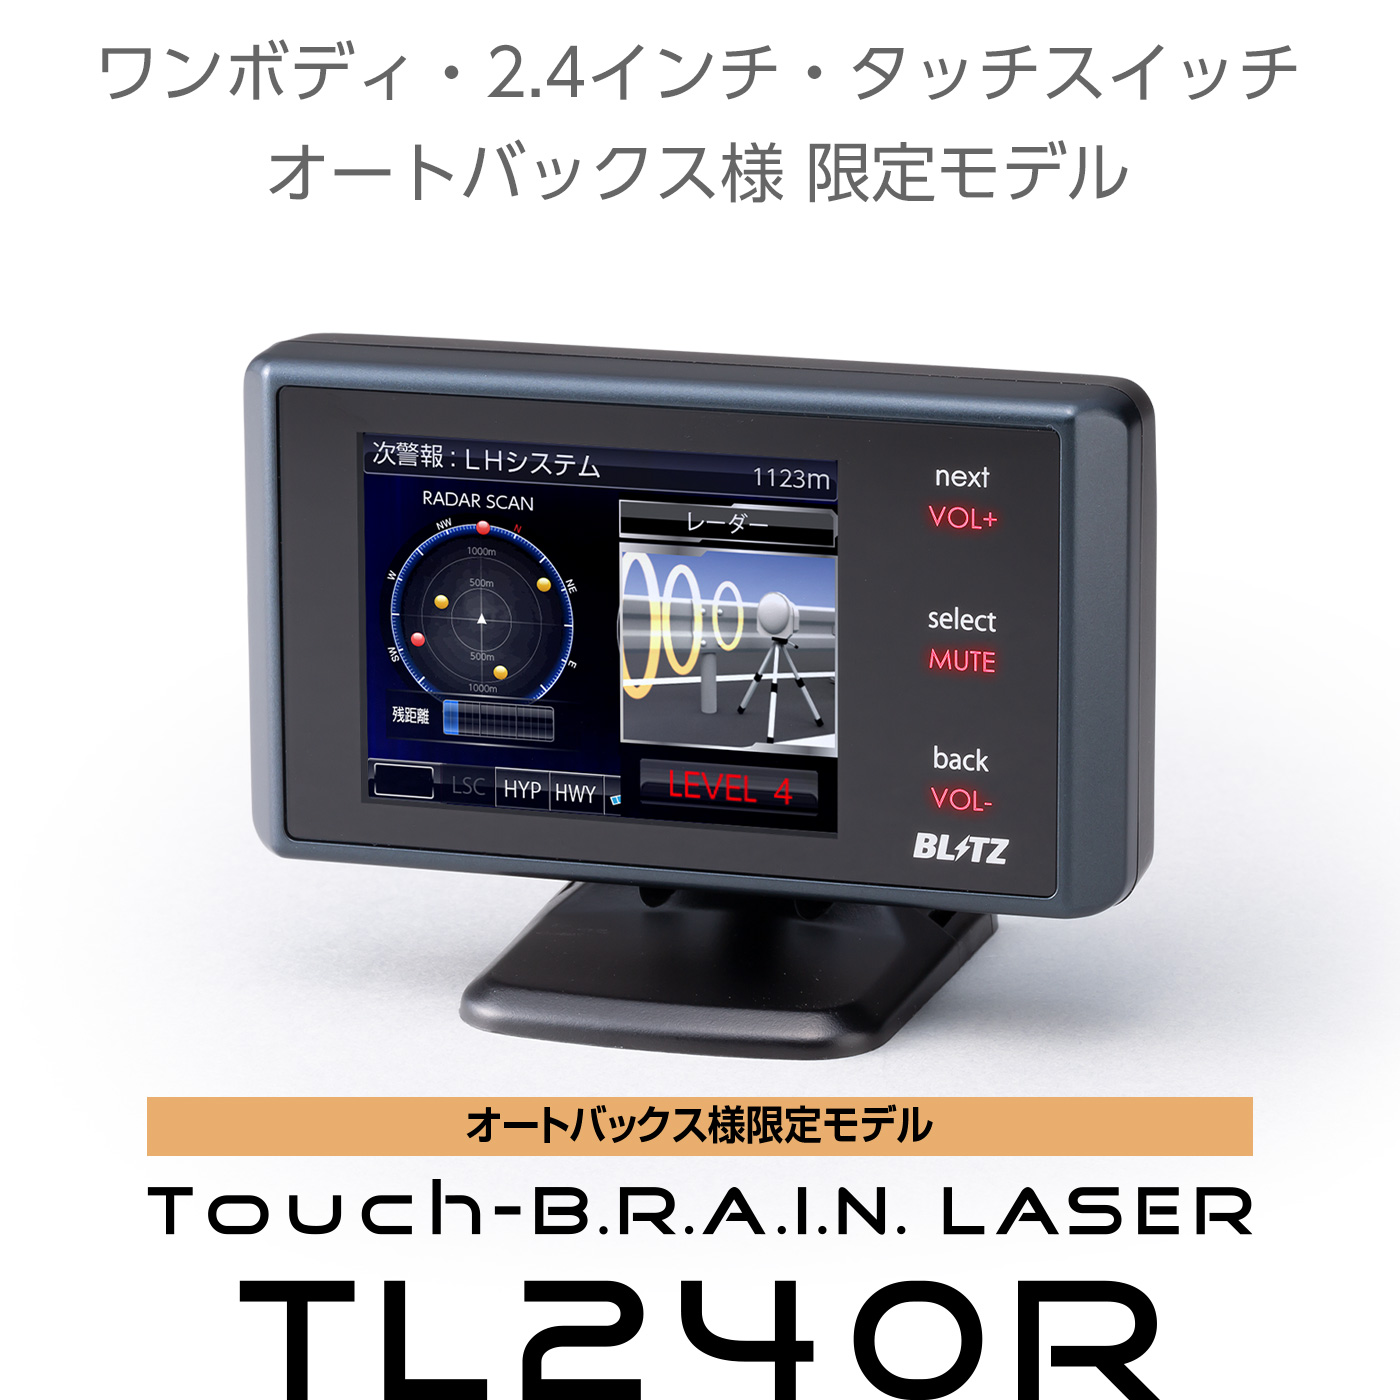 Touch-B.R.A.I.N. LASER 240R